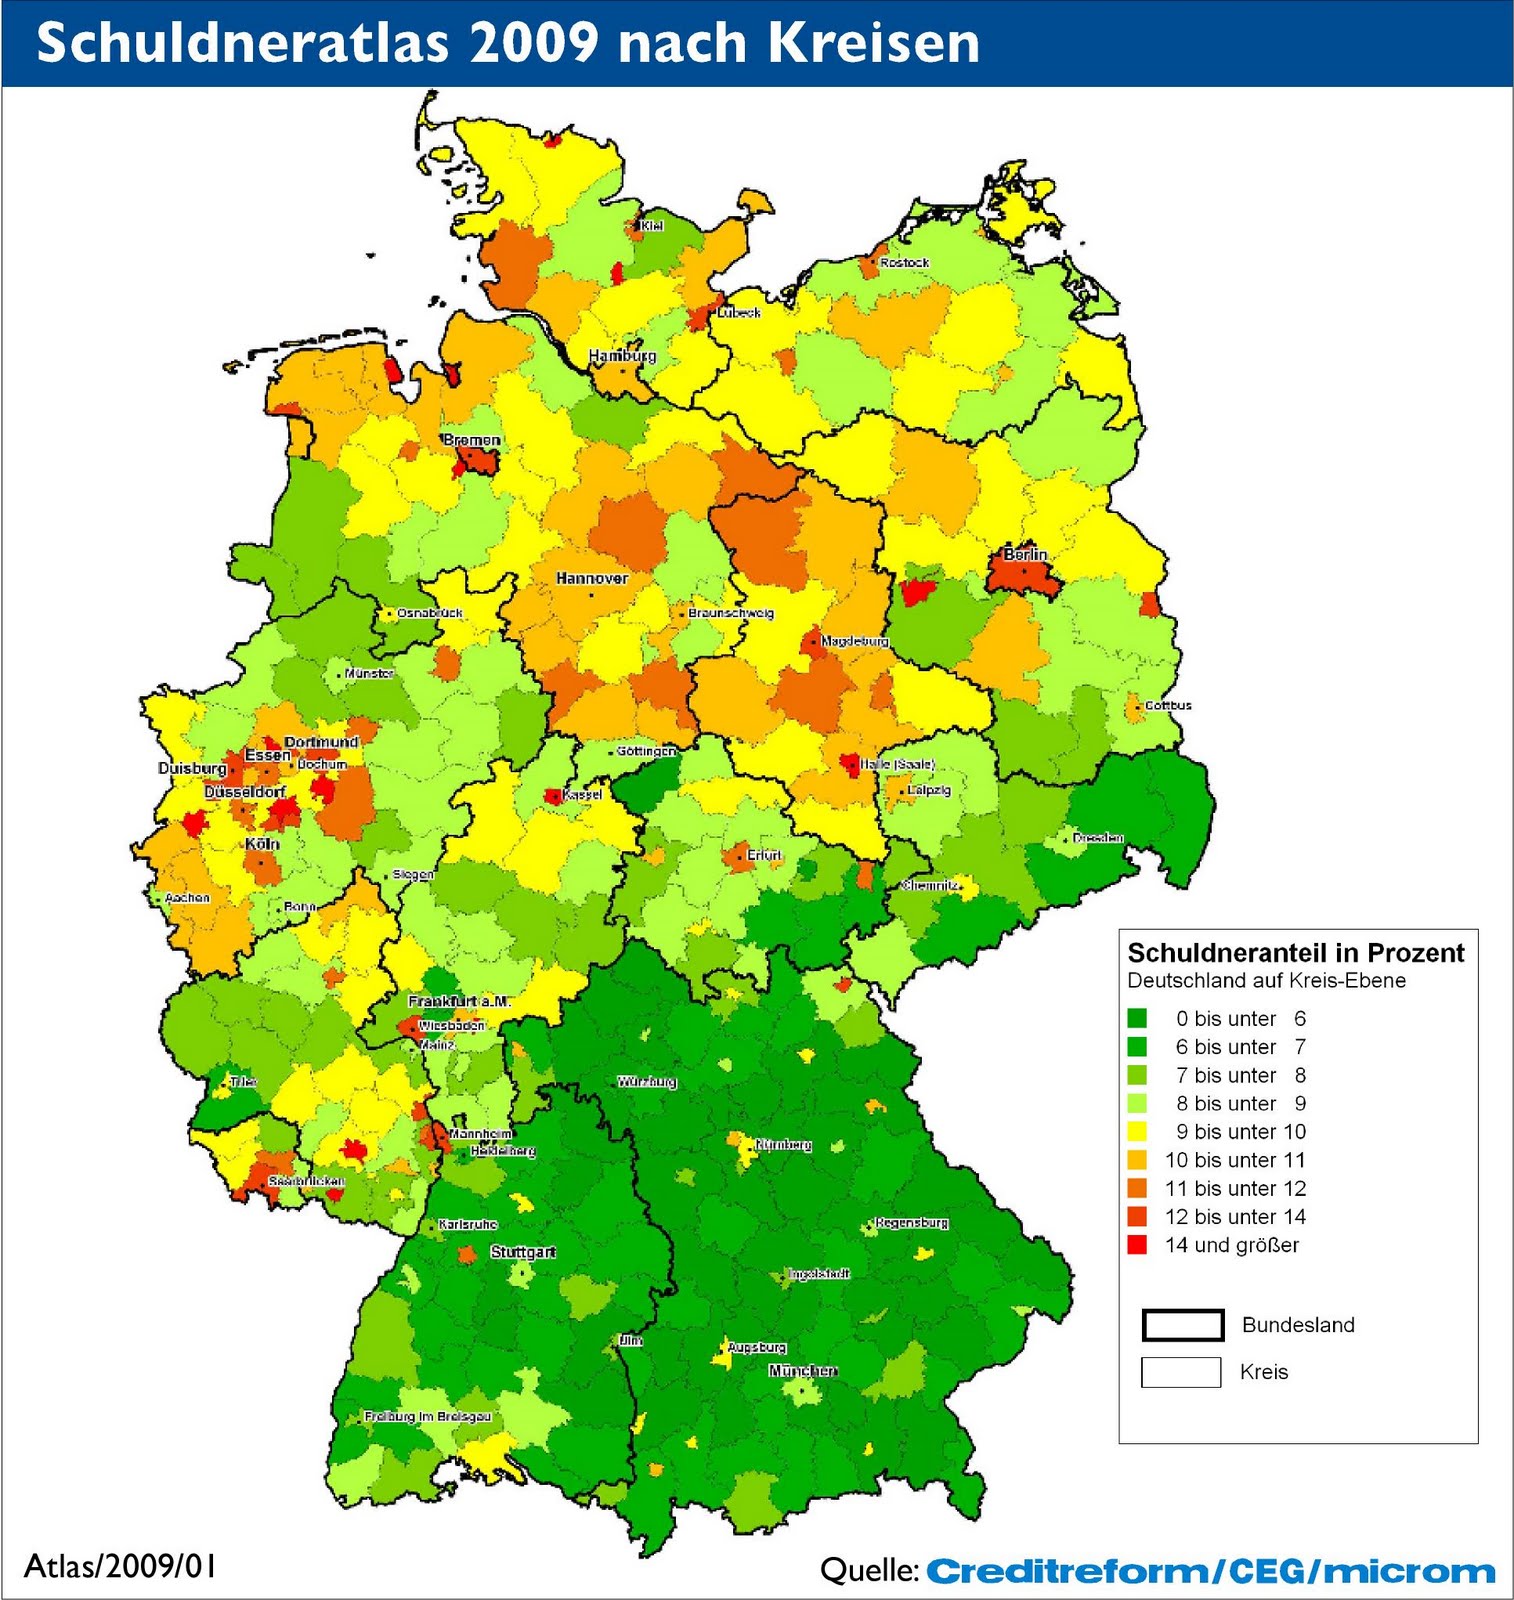 Deutschlandkarte_Schuldenatlas2009_Schuldner_nach_Kreis